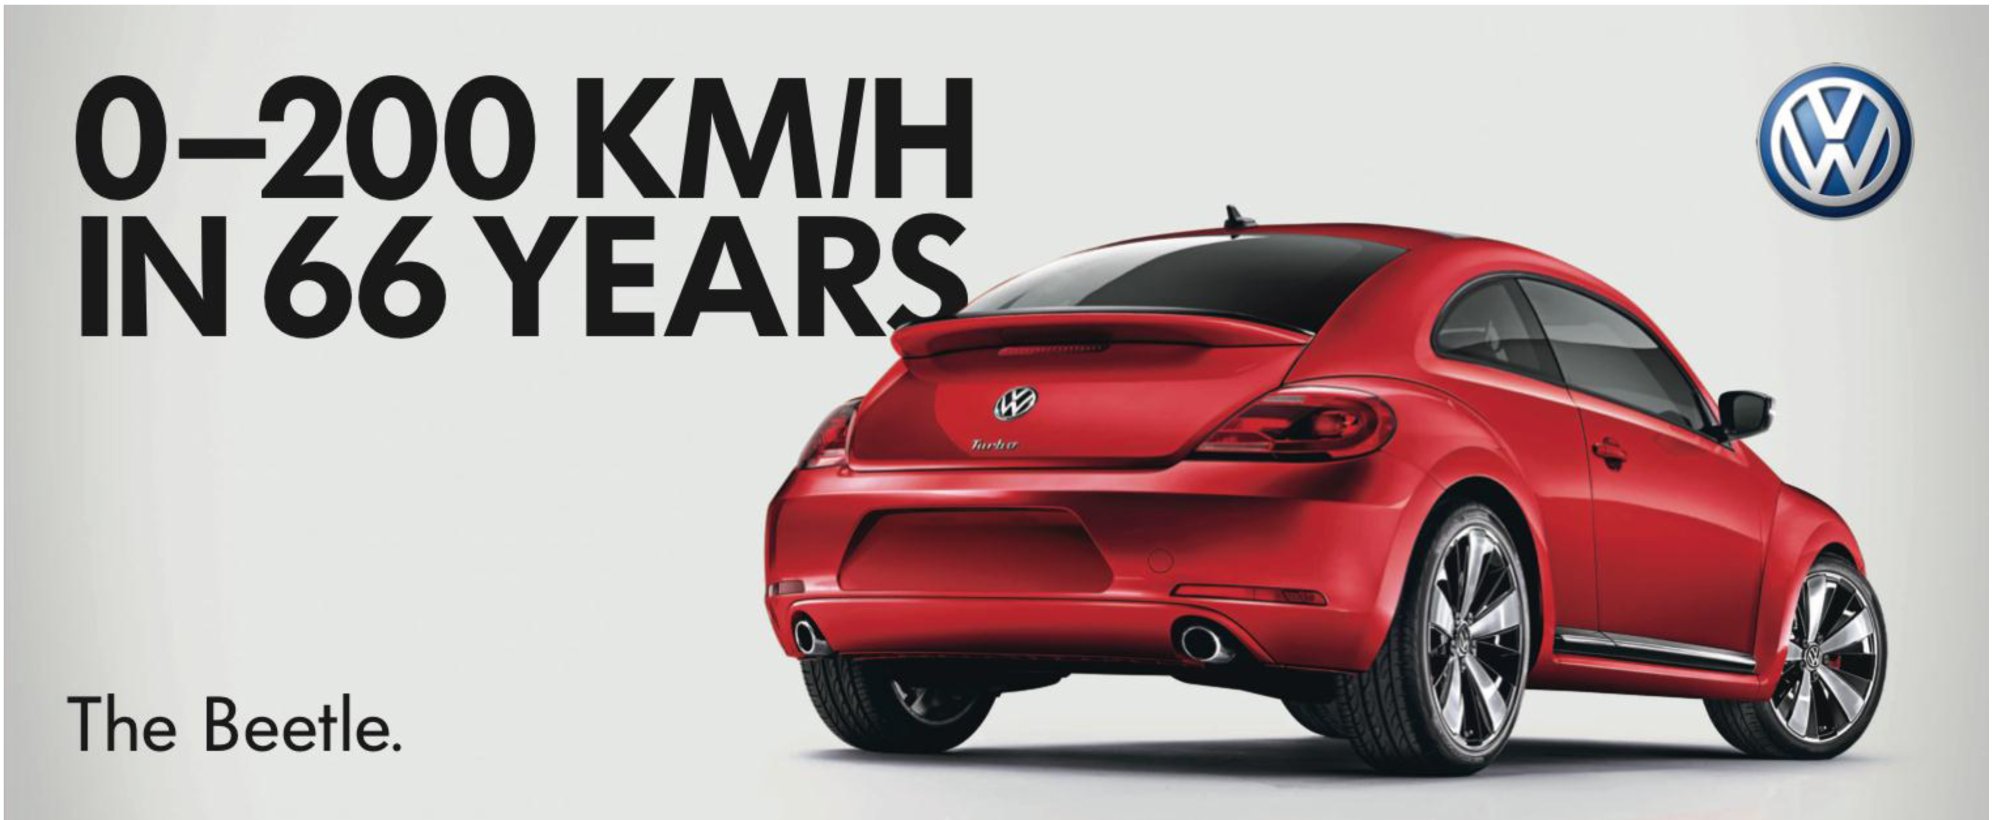 EPIC Volkswagen Beetle Ads – Billboards Reborn?